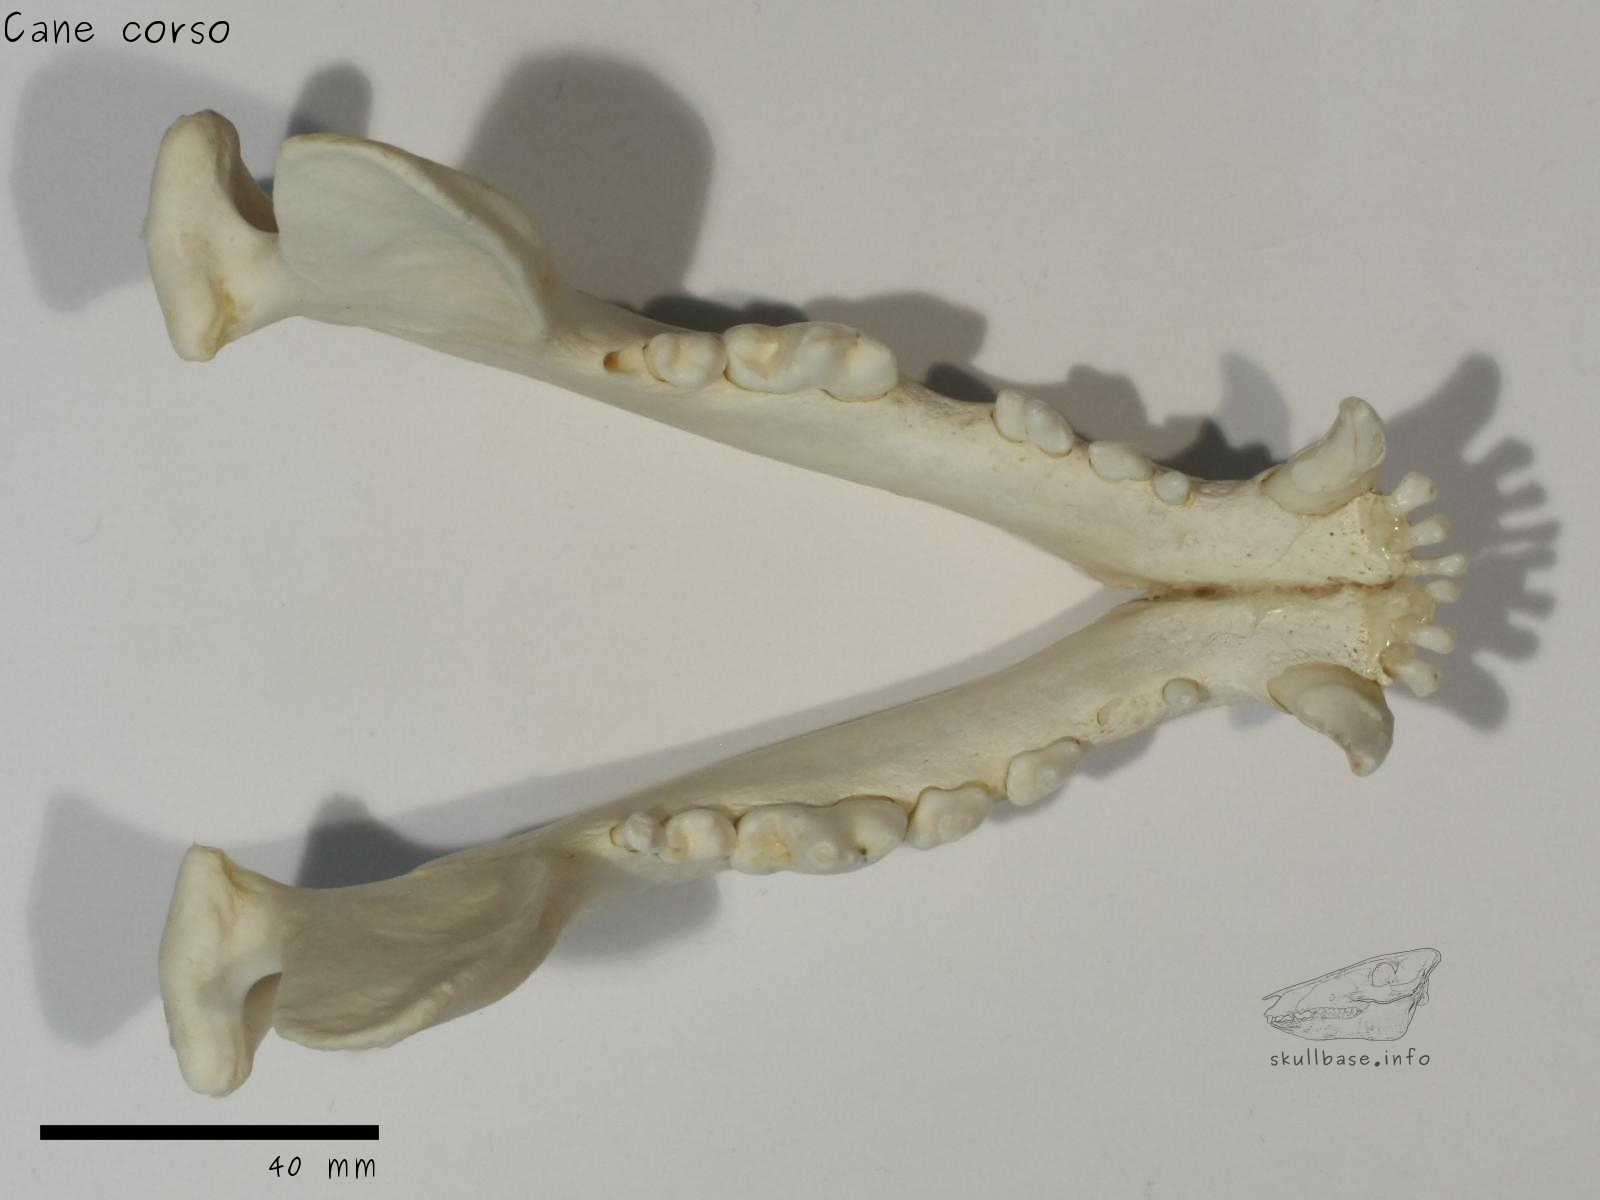 Cane corso (Canis lupus familiaris) jaw